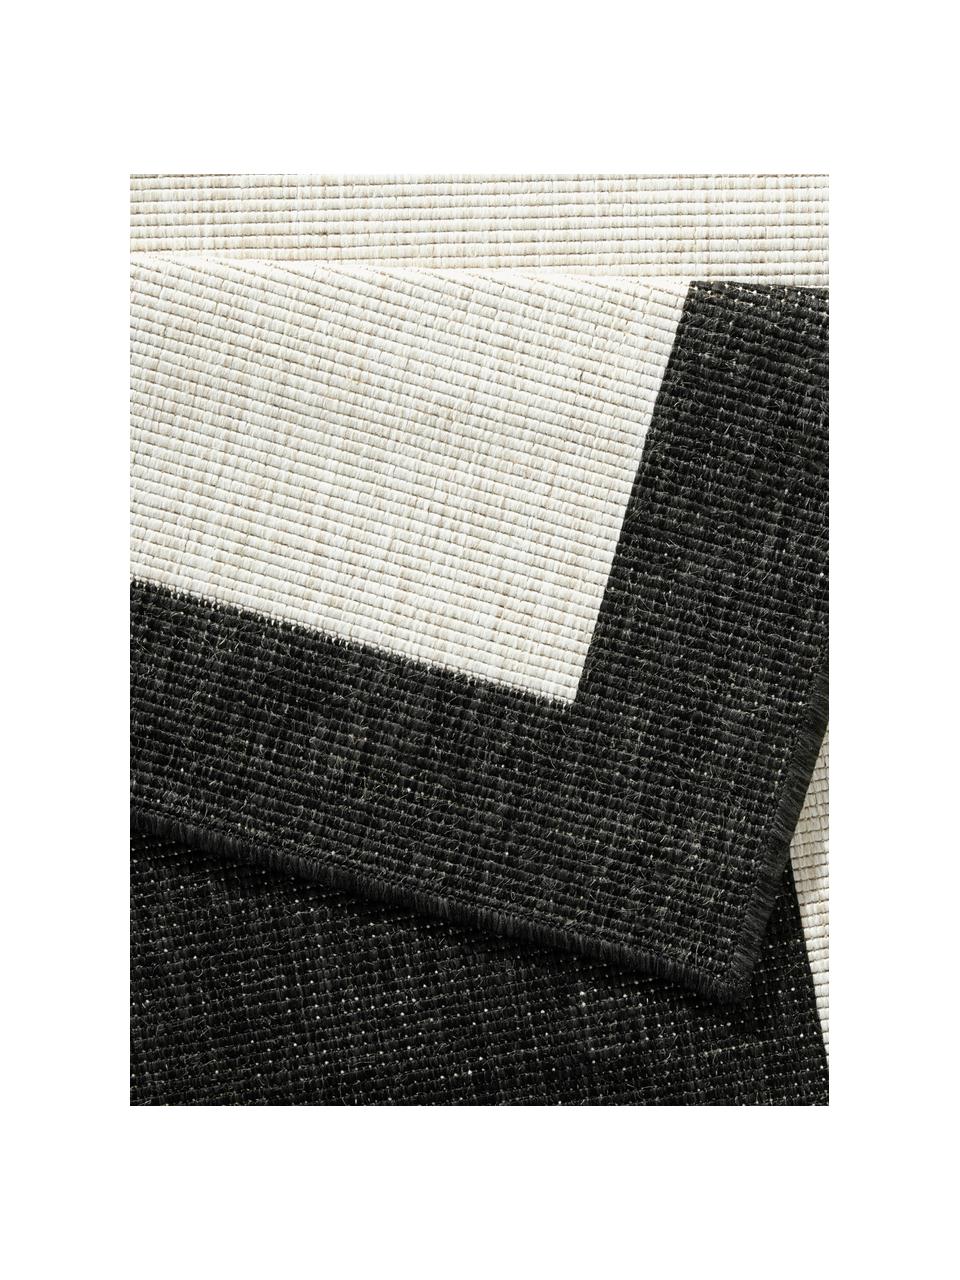 Interiérový/exteriérový oboustranný koberec Panama, 100 % polypropylen, Černá, krémová, Š 80 cm, D 150 cm (velikost XS)